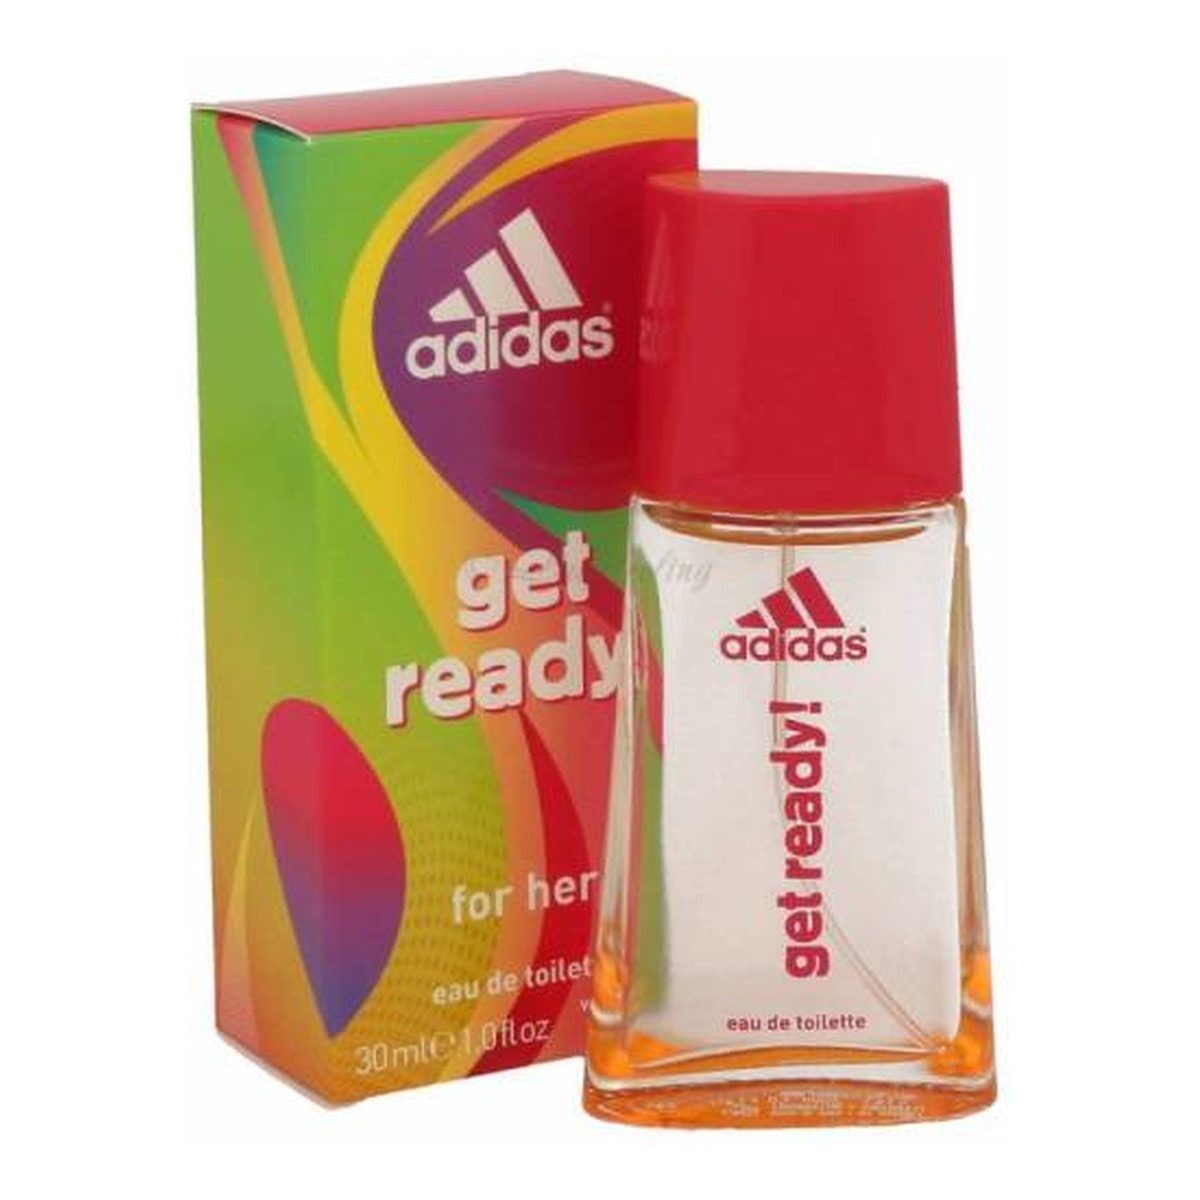 Adidas Woman Get Ready Woda toaletowa spray 30ml